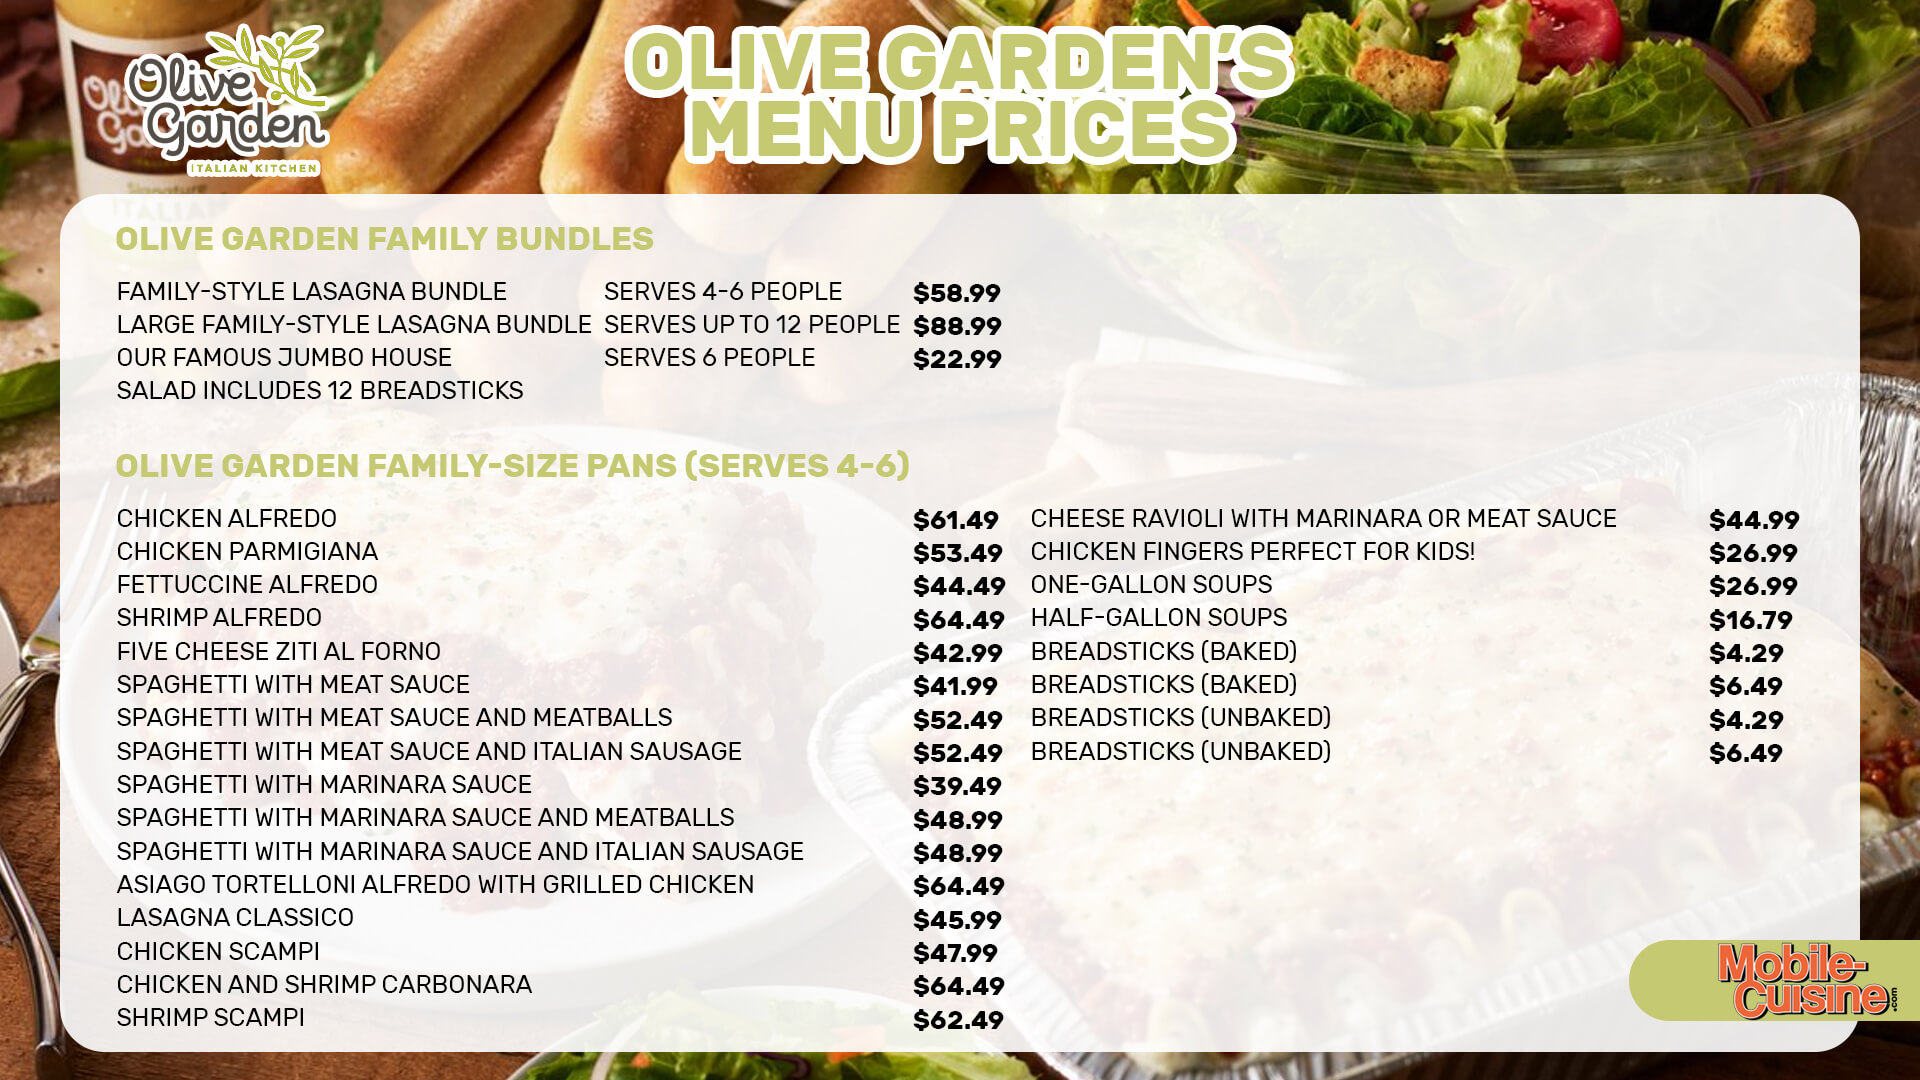 Olive-Garden-menu-prices